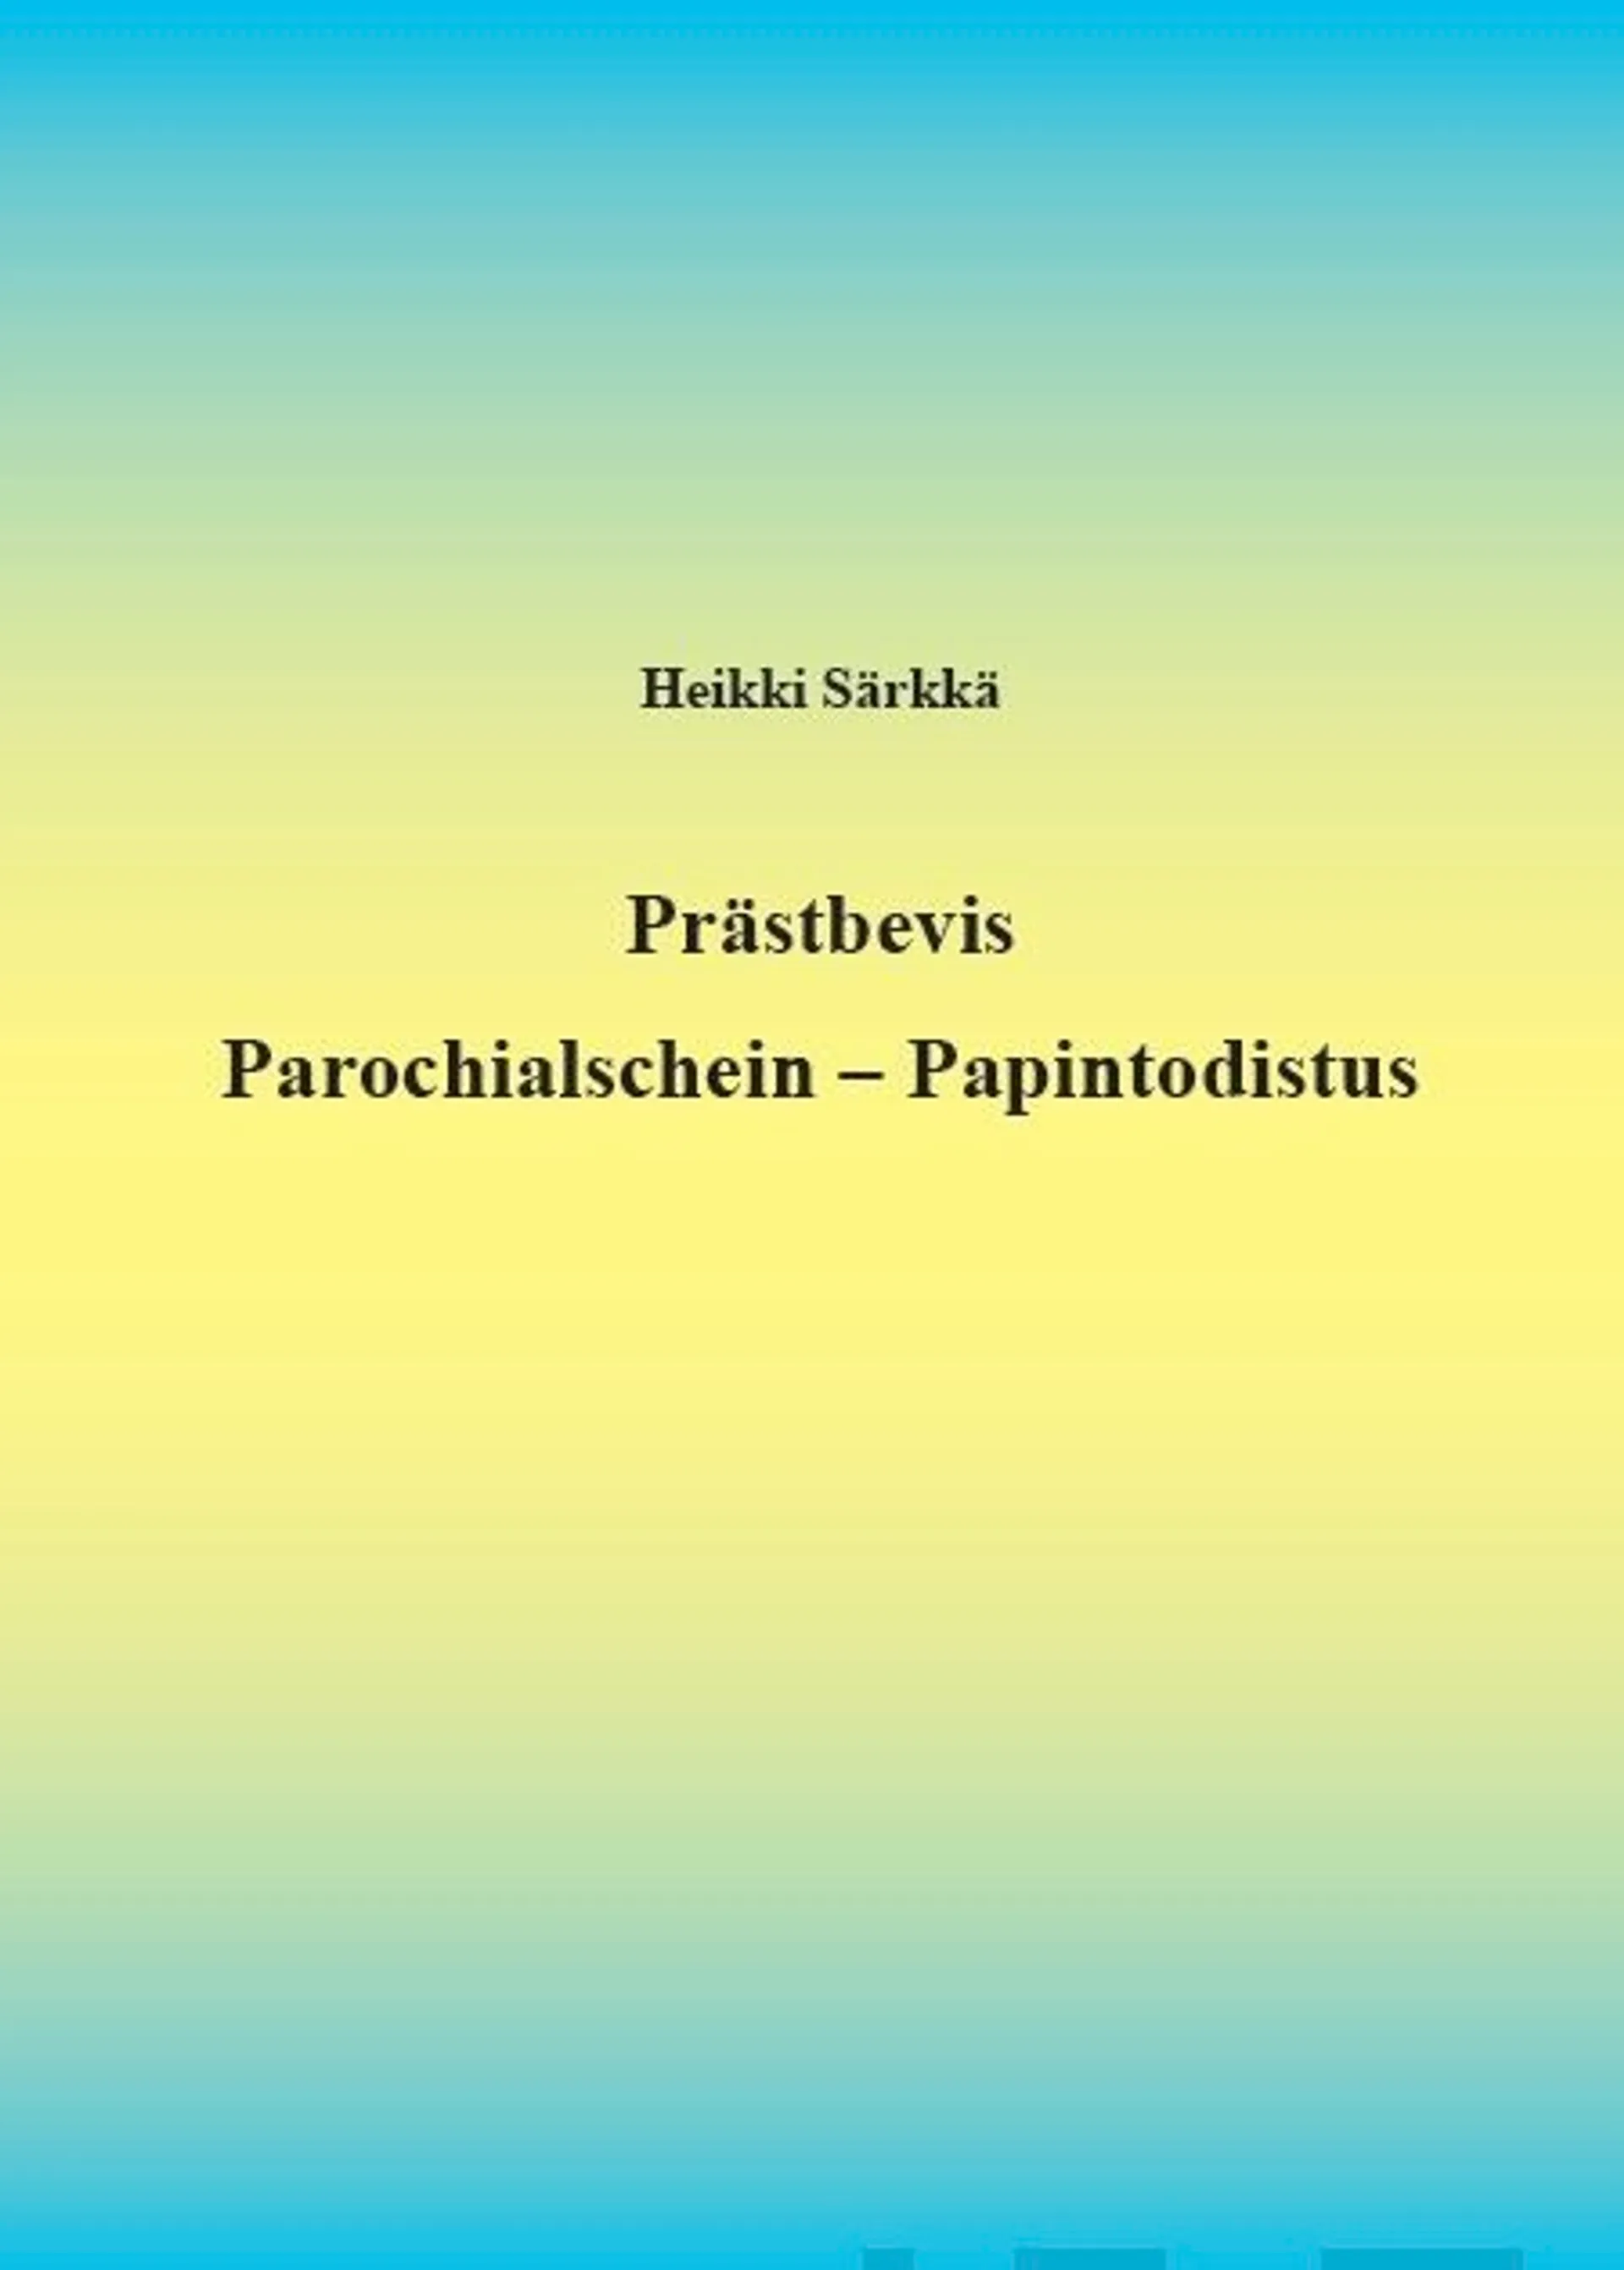 Särkkä, Prästbevis - Parochialschein - Papintodistus